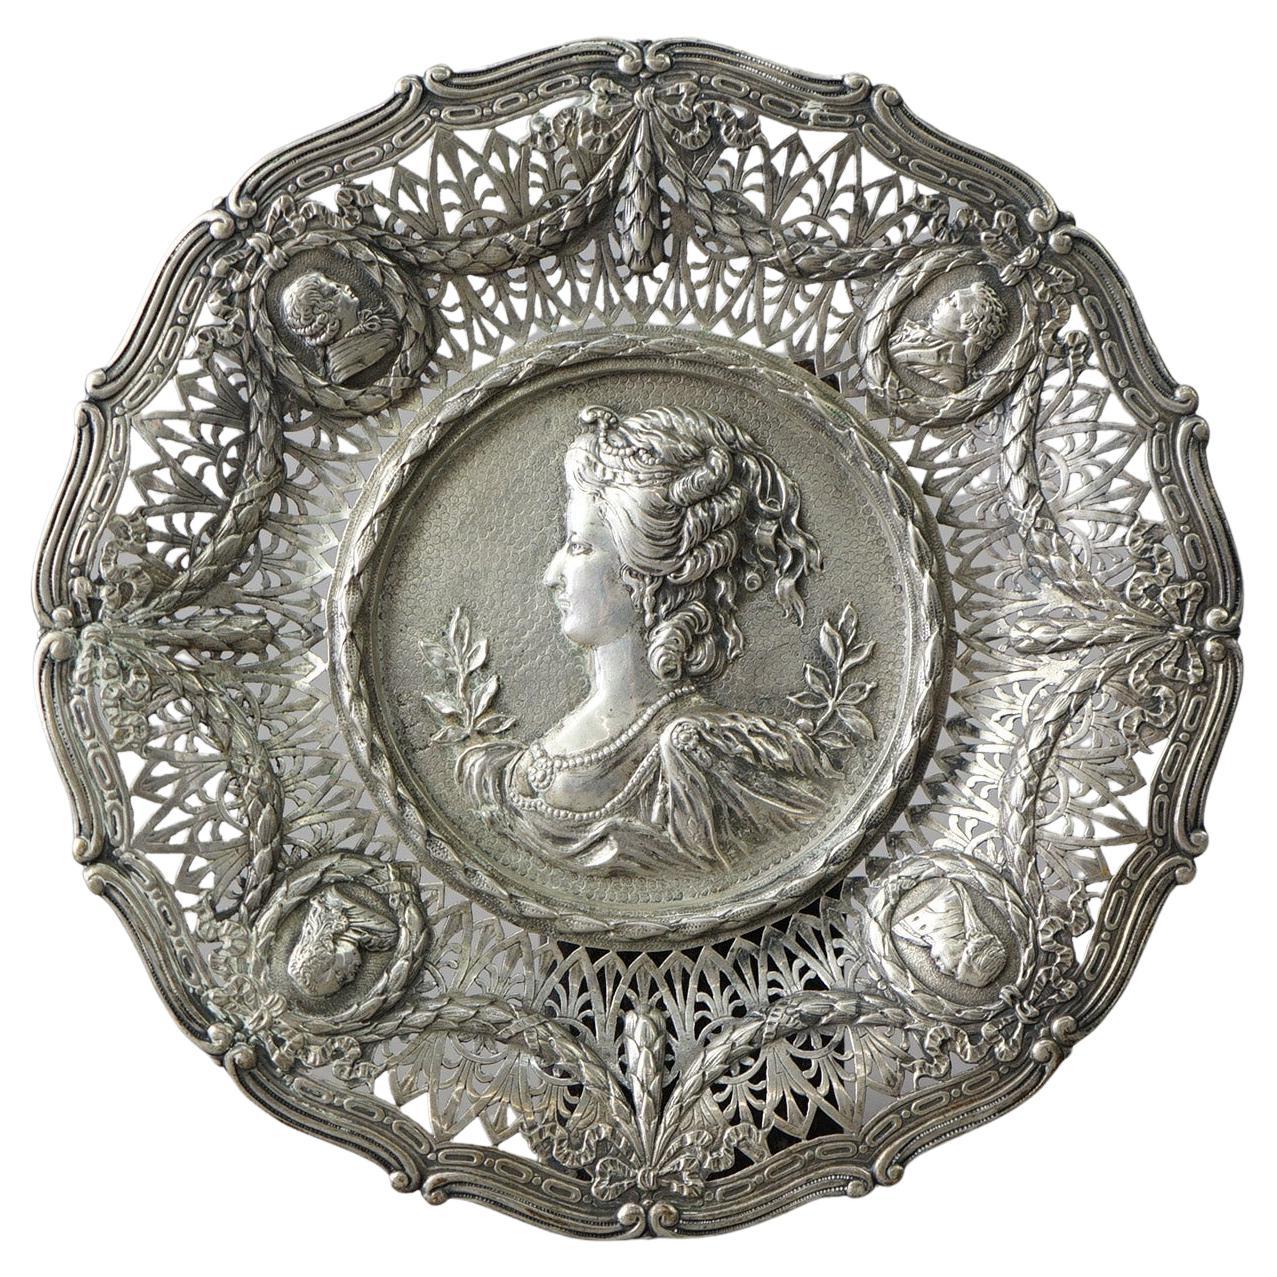 Plateau portrait ancien en argent réticulé et gaufré avec poinçons, 19ème siècle